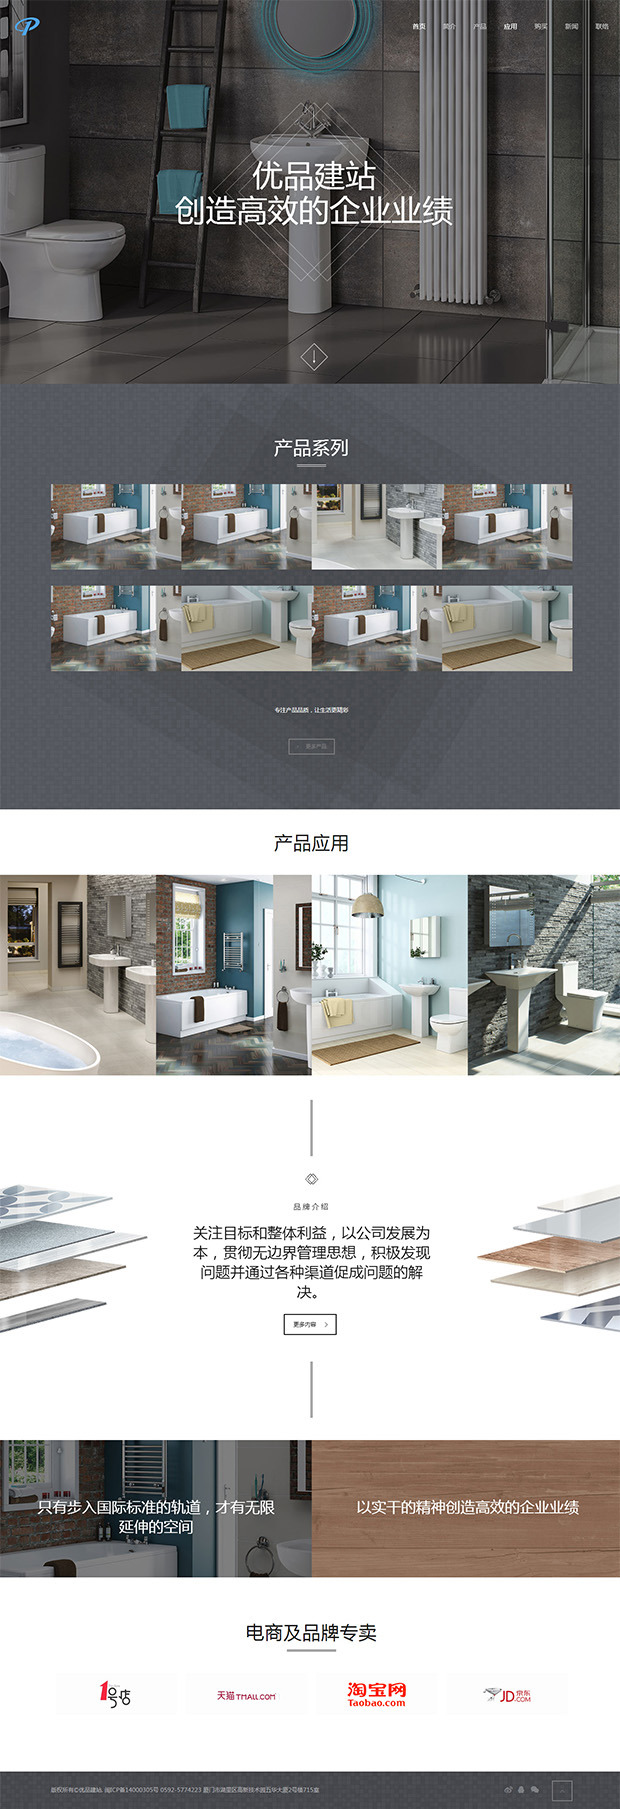 浴室装饰网站模板